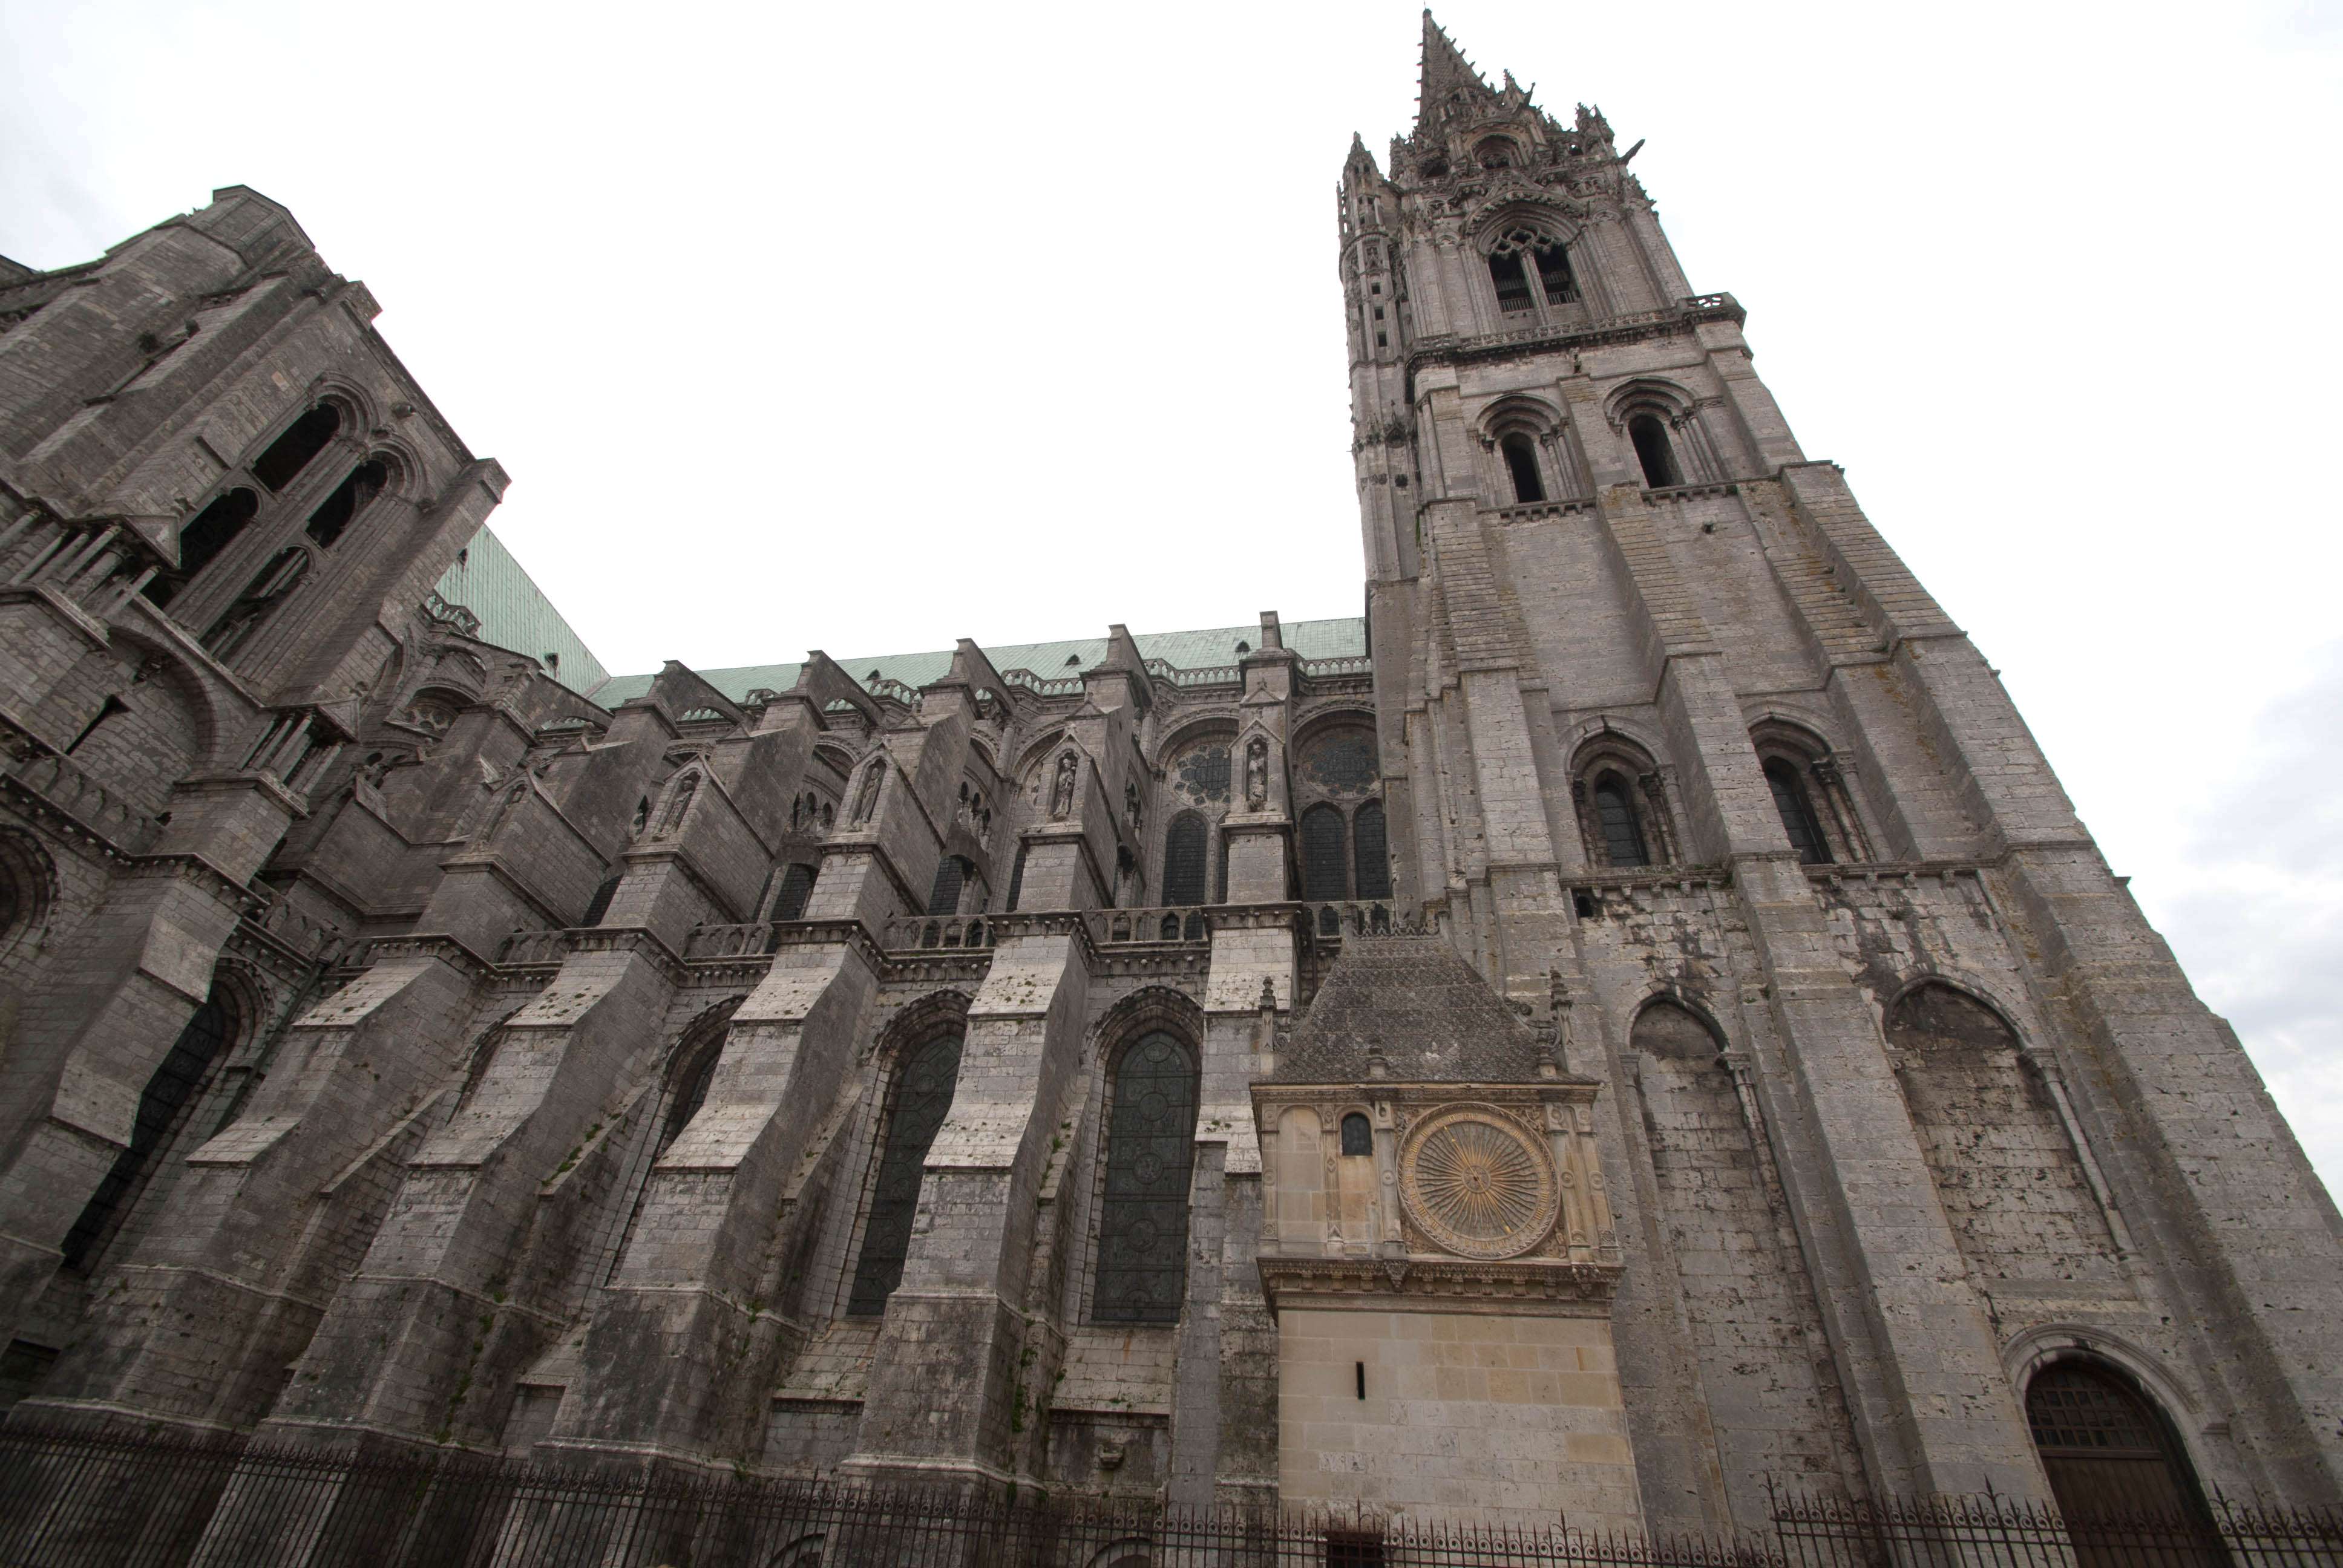 Arquitectura de la catedral de Chartres - Chartres: Arte, espiritualidad y esoterismo. (8)